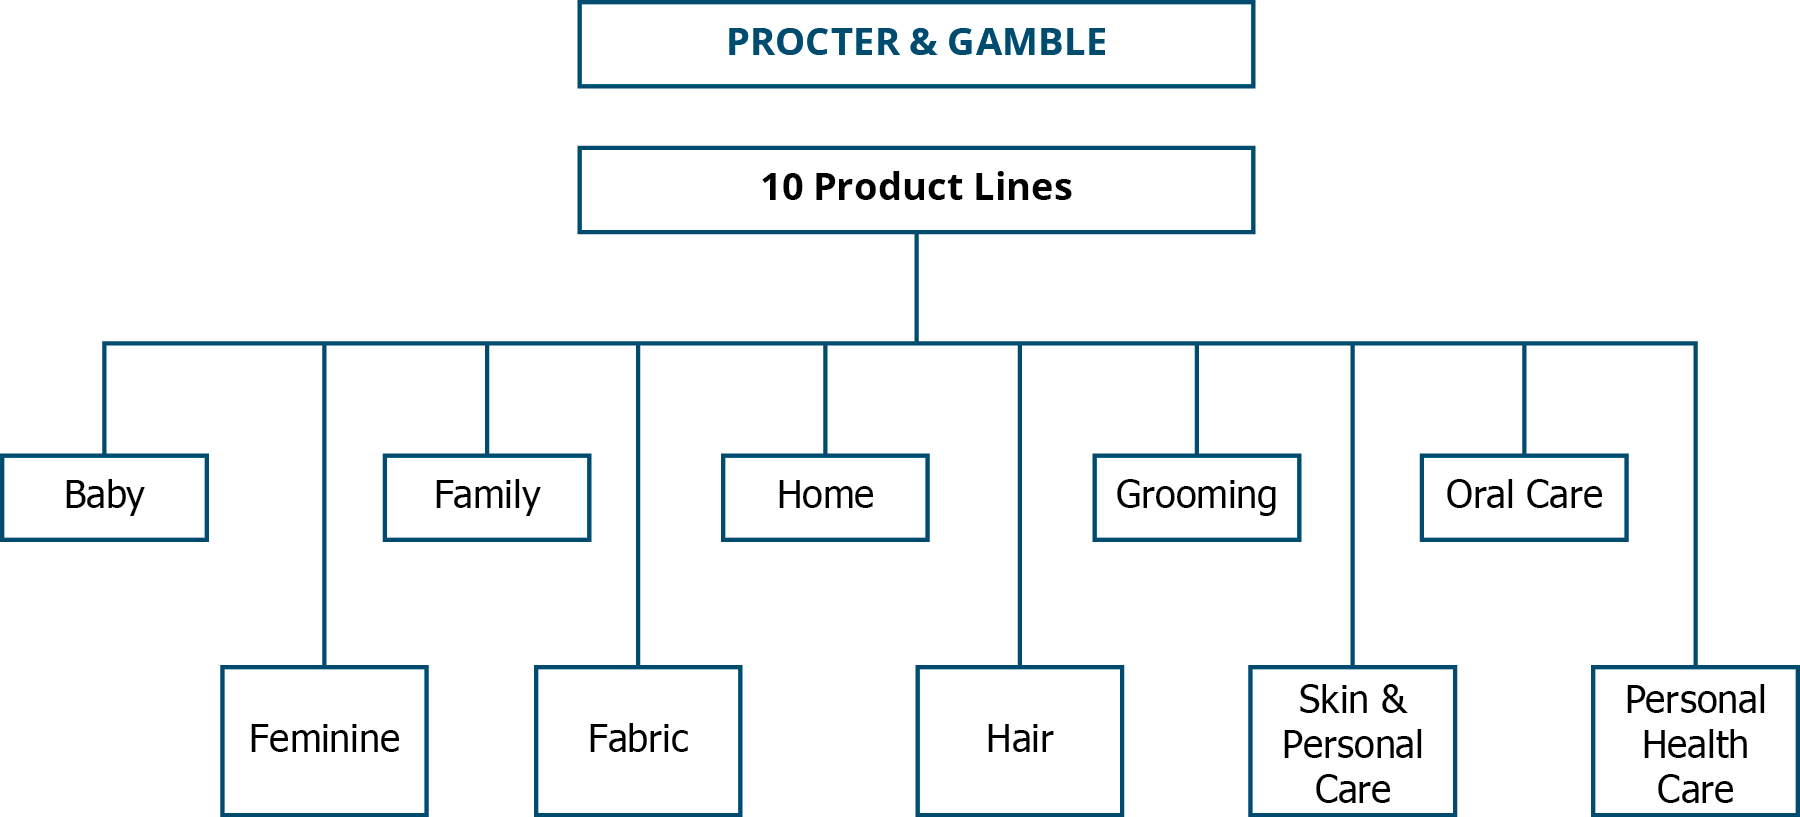 Organograma da Procter & Gamble mostrando as 10 linhas de produtos: Bebês, Feminino, Familiar, Tecido, Casa, Cabelo, Higiene Pessoal, Pele e Cuidados Pessoais, Cuidados Bucais e Cuidados Pessoais de Saúde.